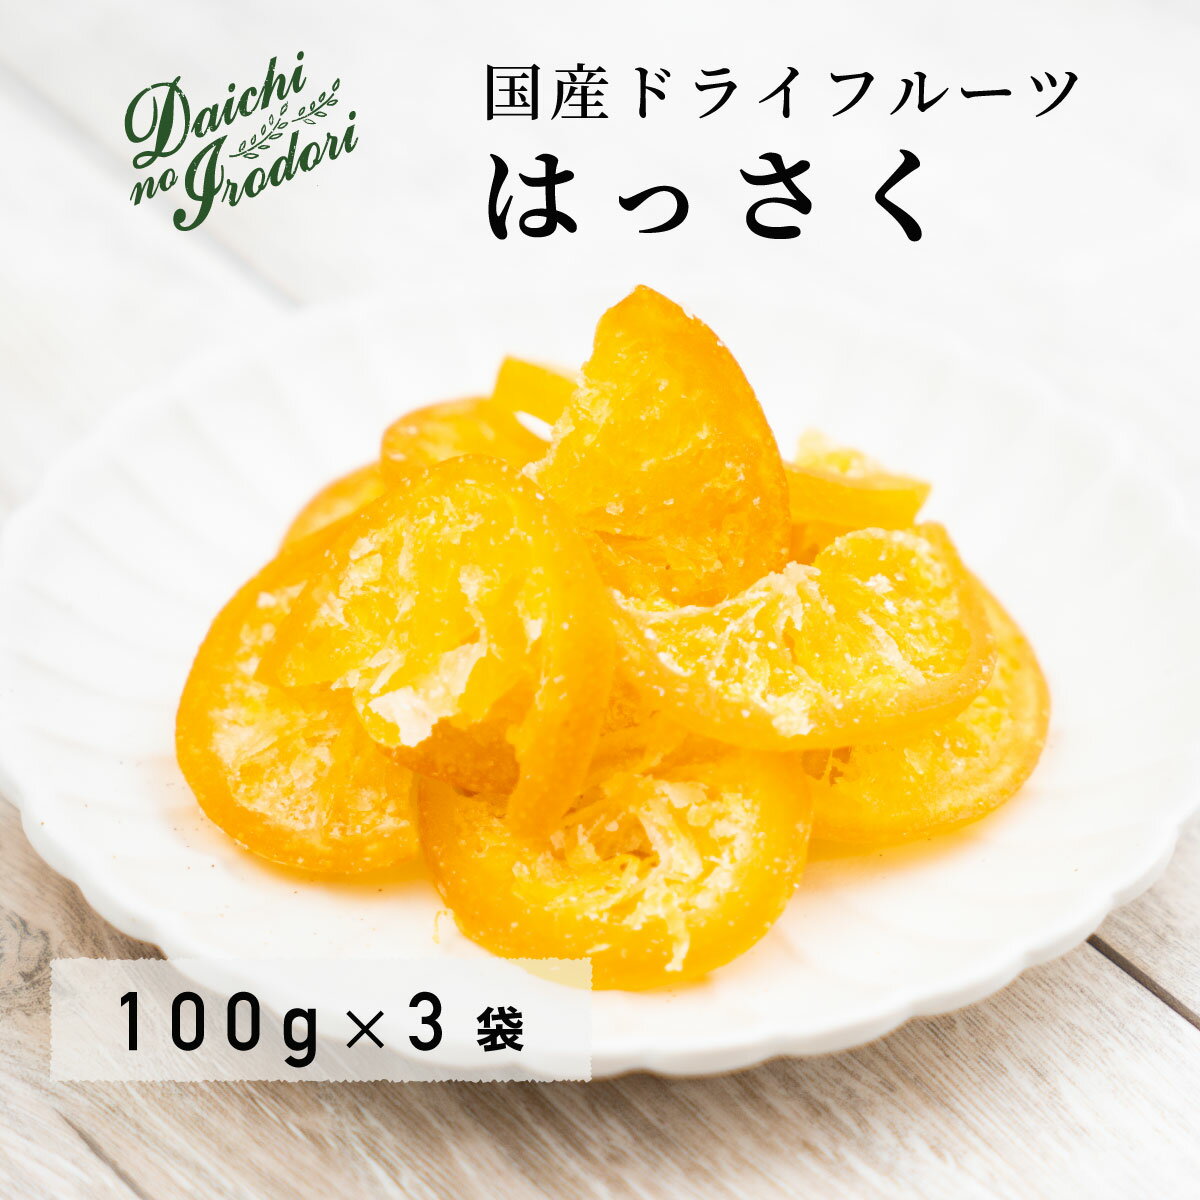 乾燥橘子果實 水果乾 日本產 八朔 100g x 3包 夾鏈袋裝日本必買 | 日本樂天熱銷